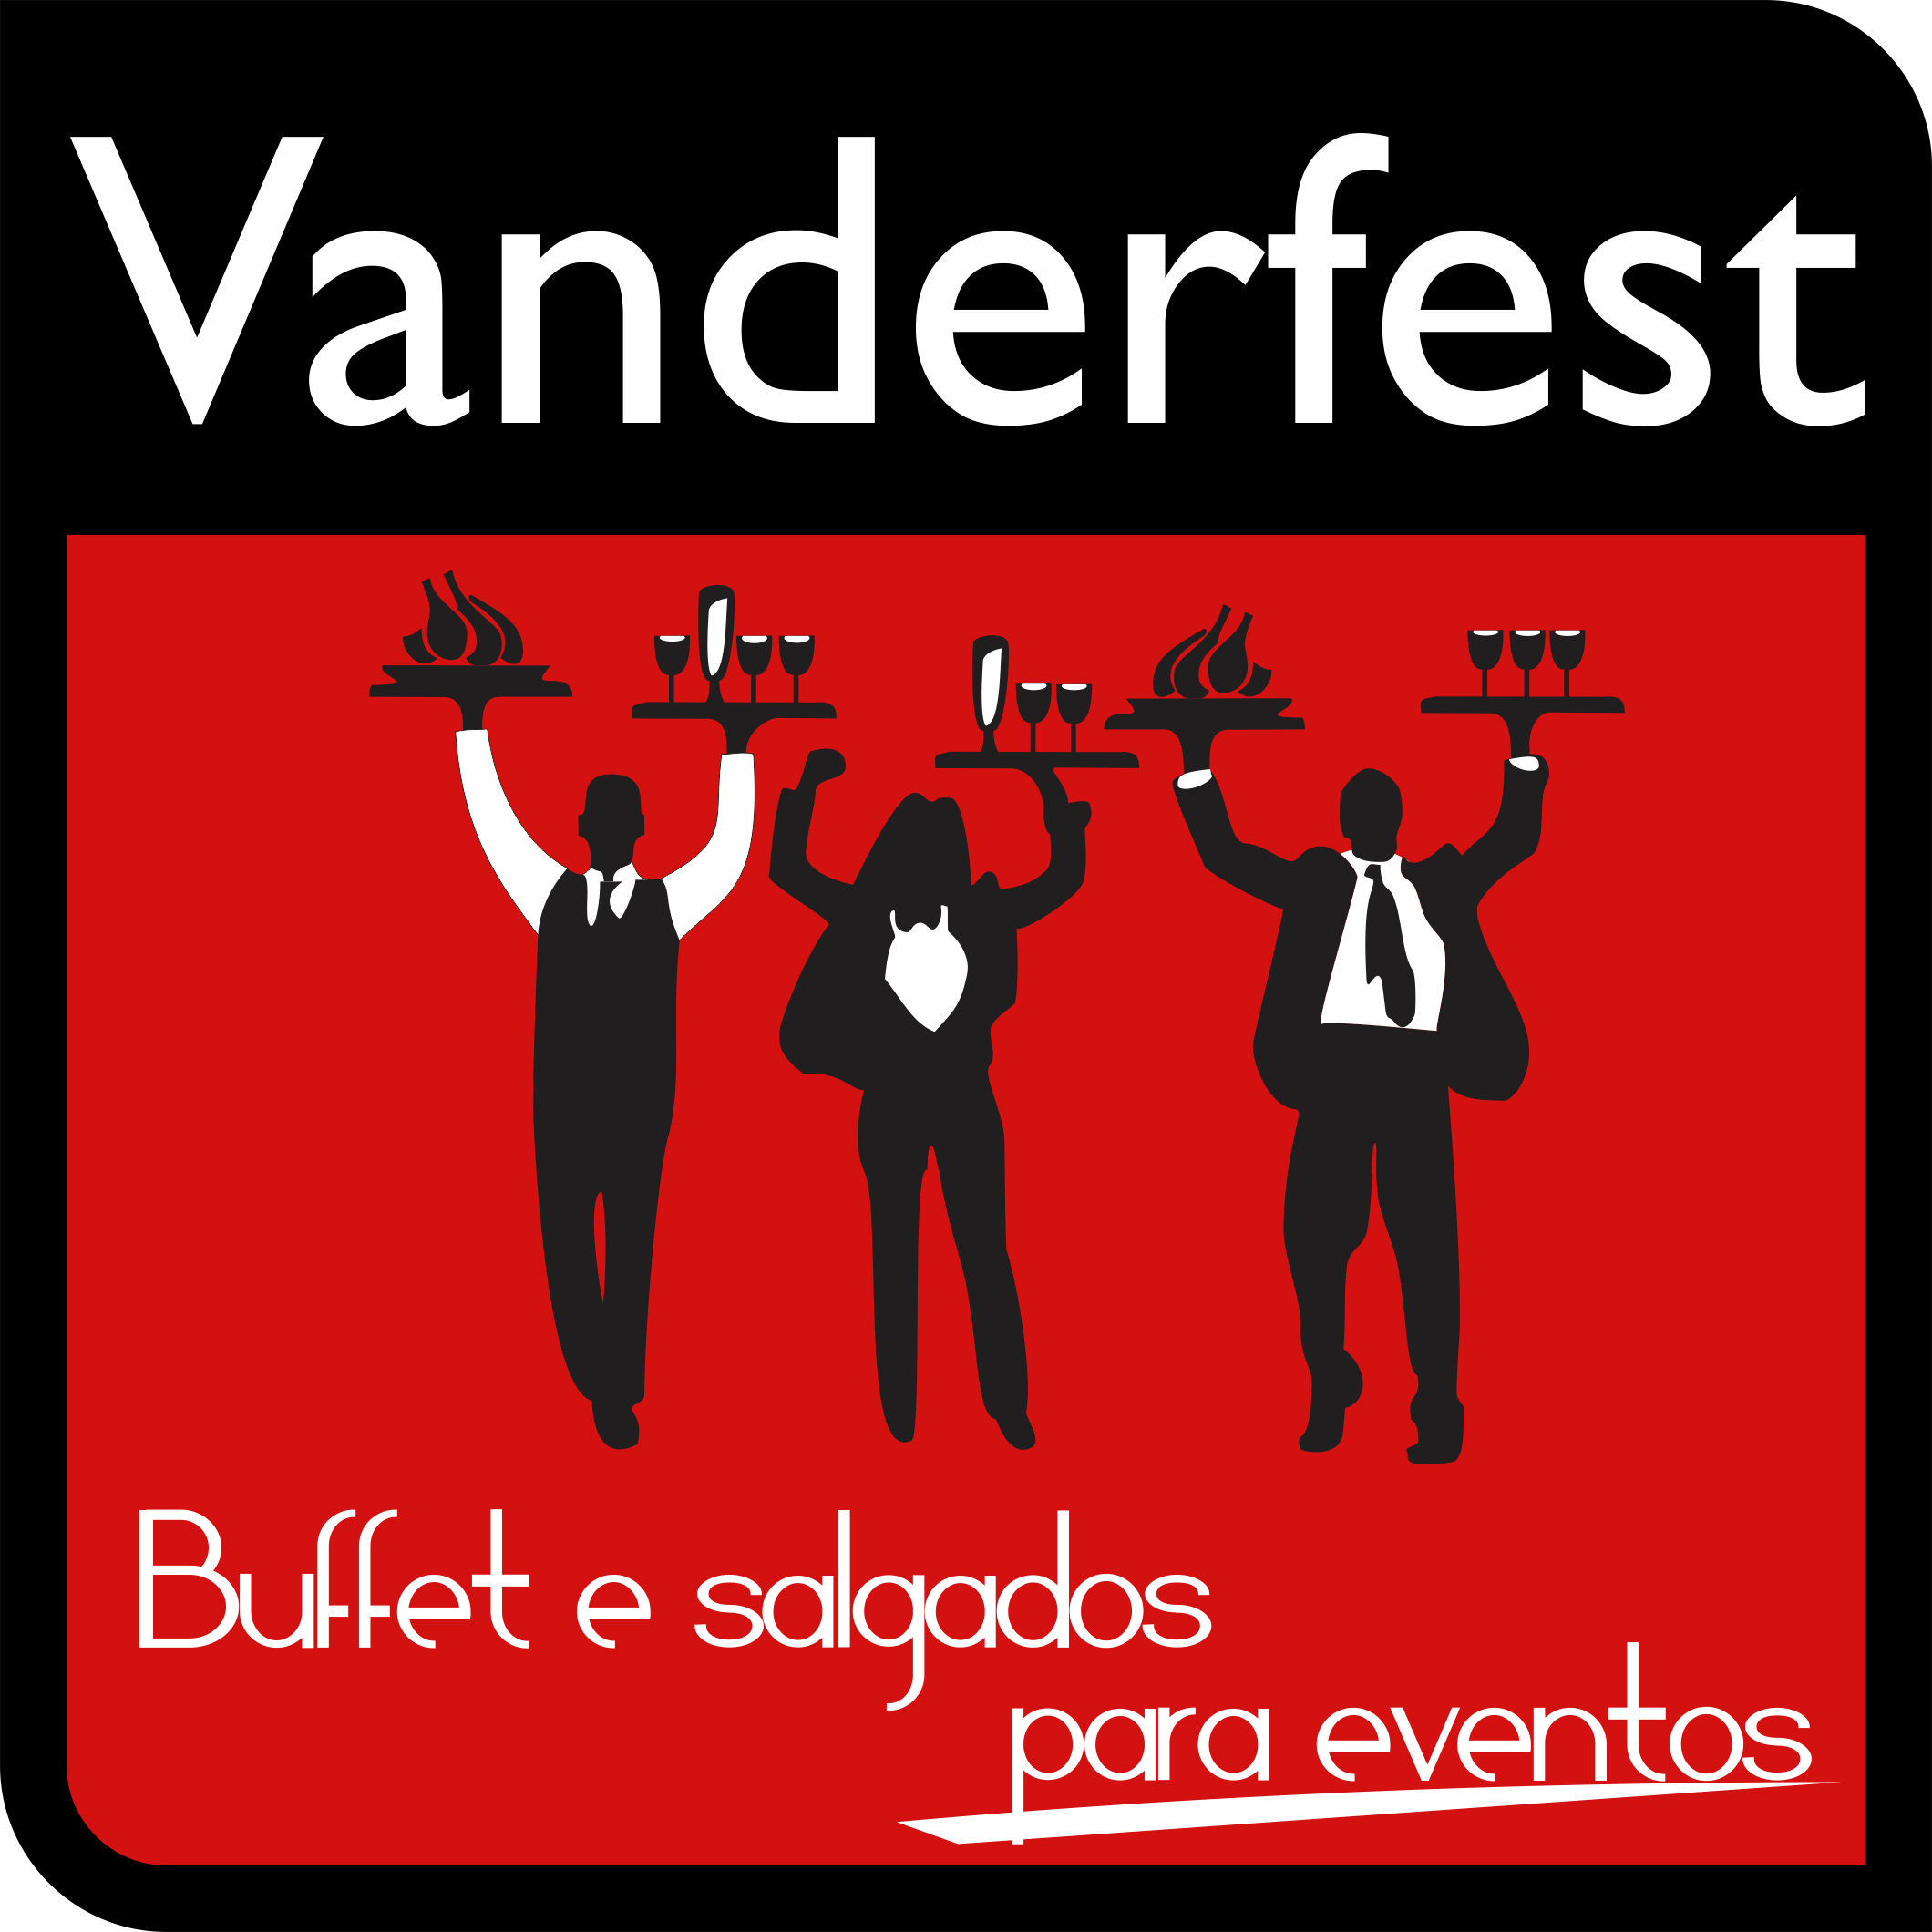 Vanderfest Buffet